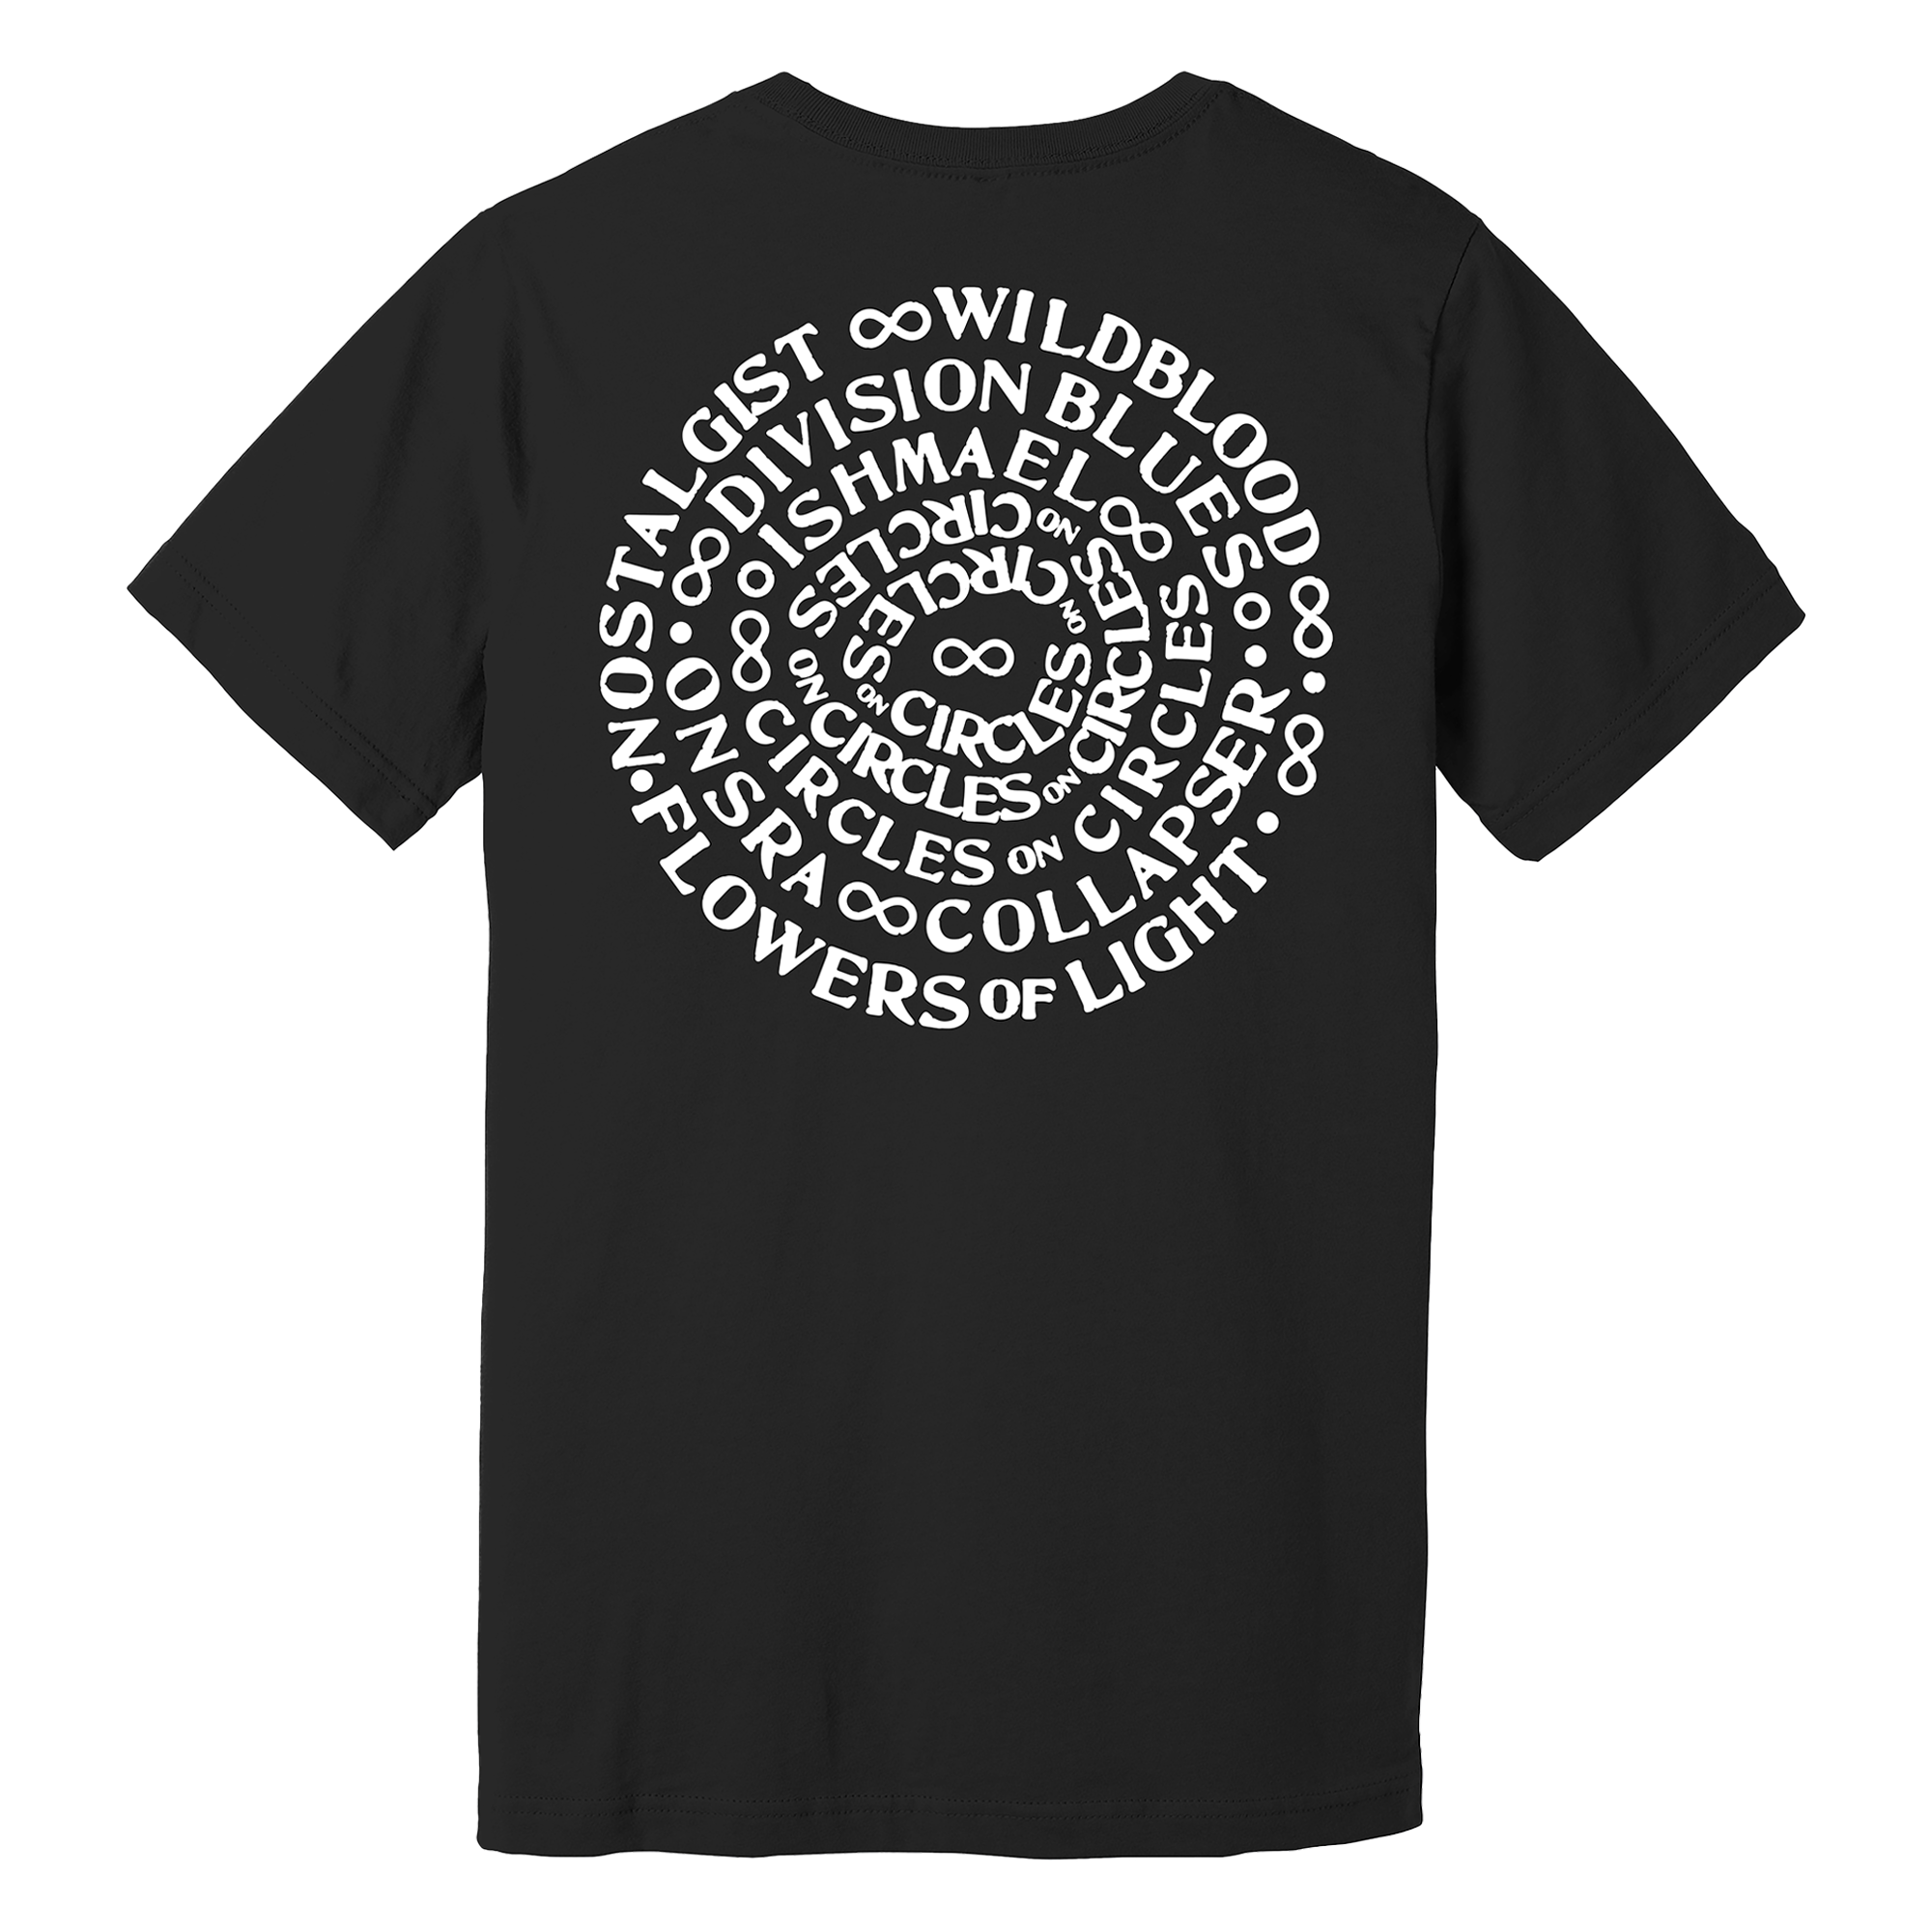 Caspian - Spiral T-Shirt - Black